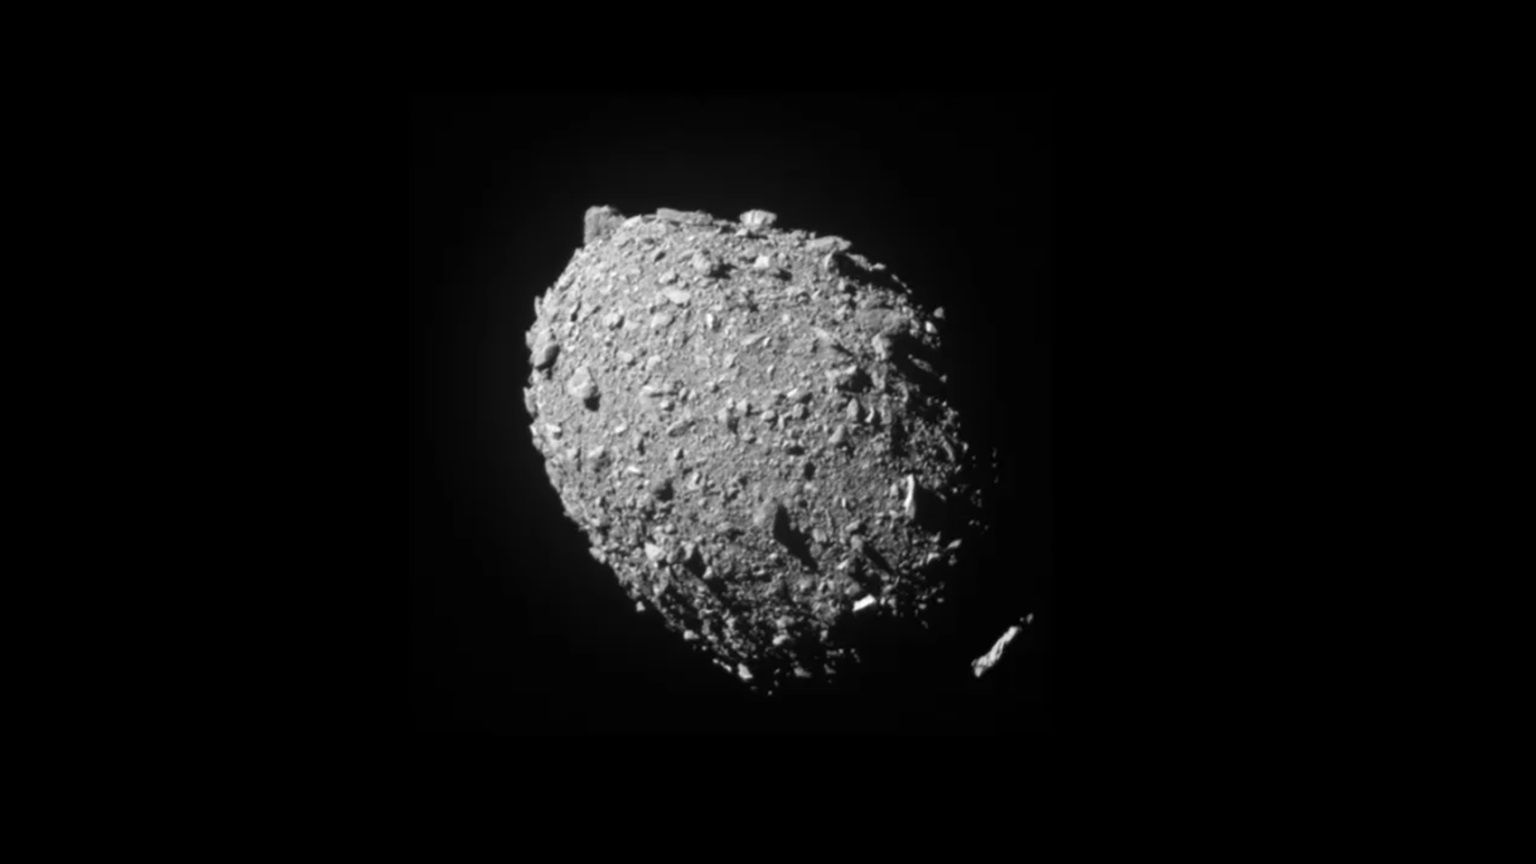 Asteroidens bana och form förändras efter DART-impakt, bekräftar NASA